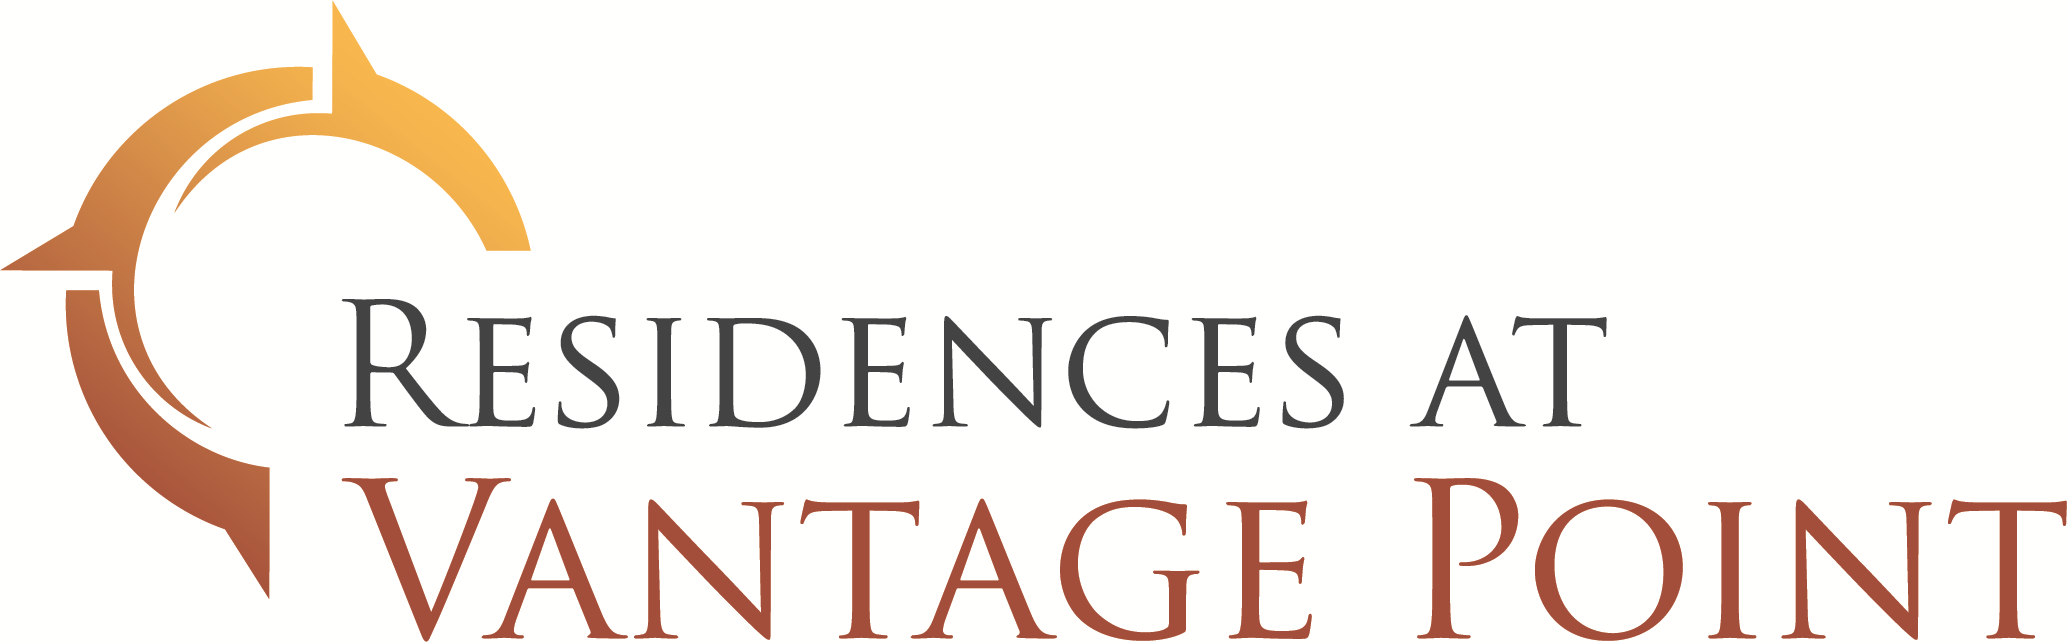 Residences at Vantage Point Company Logo